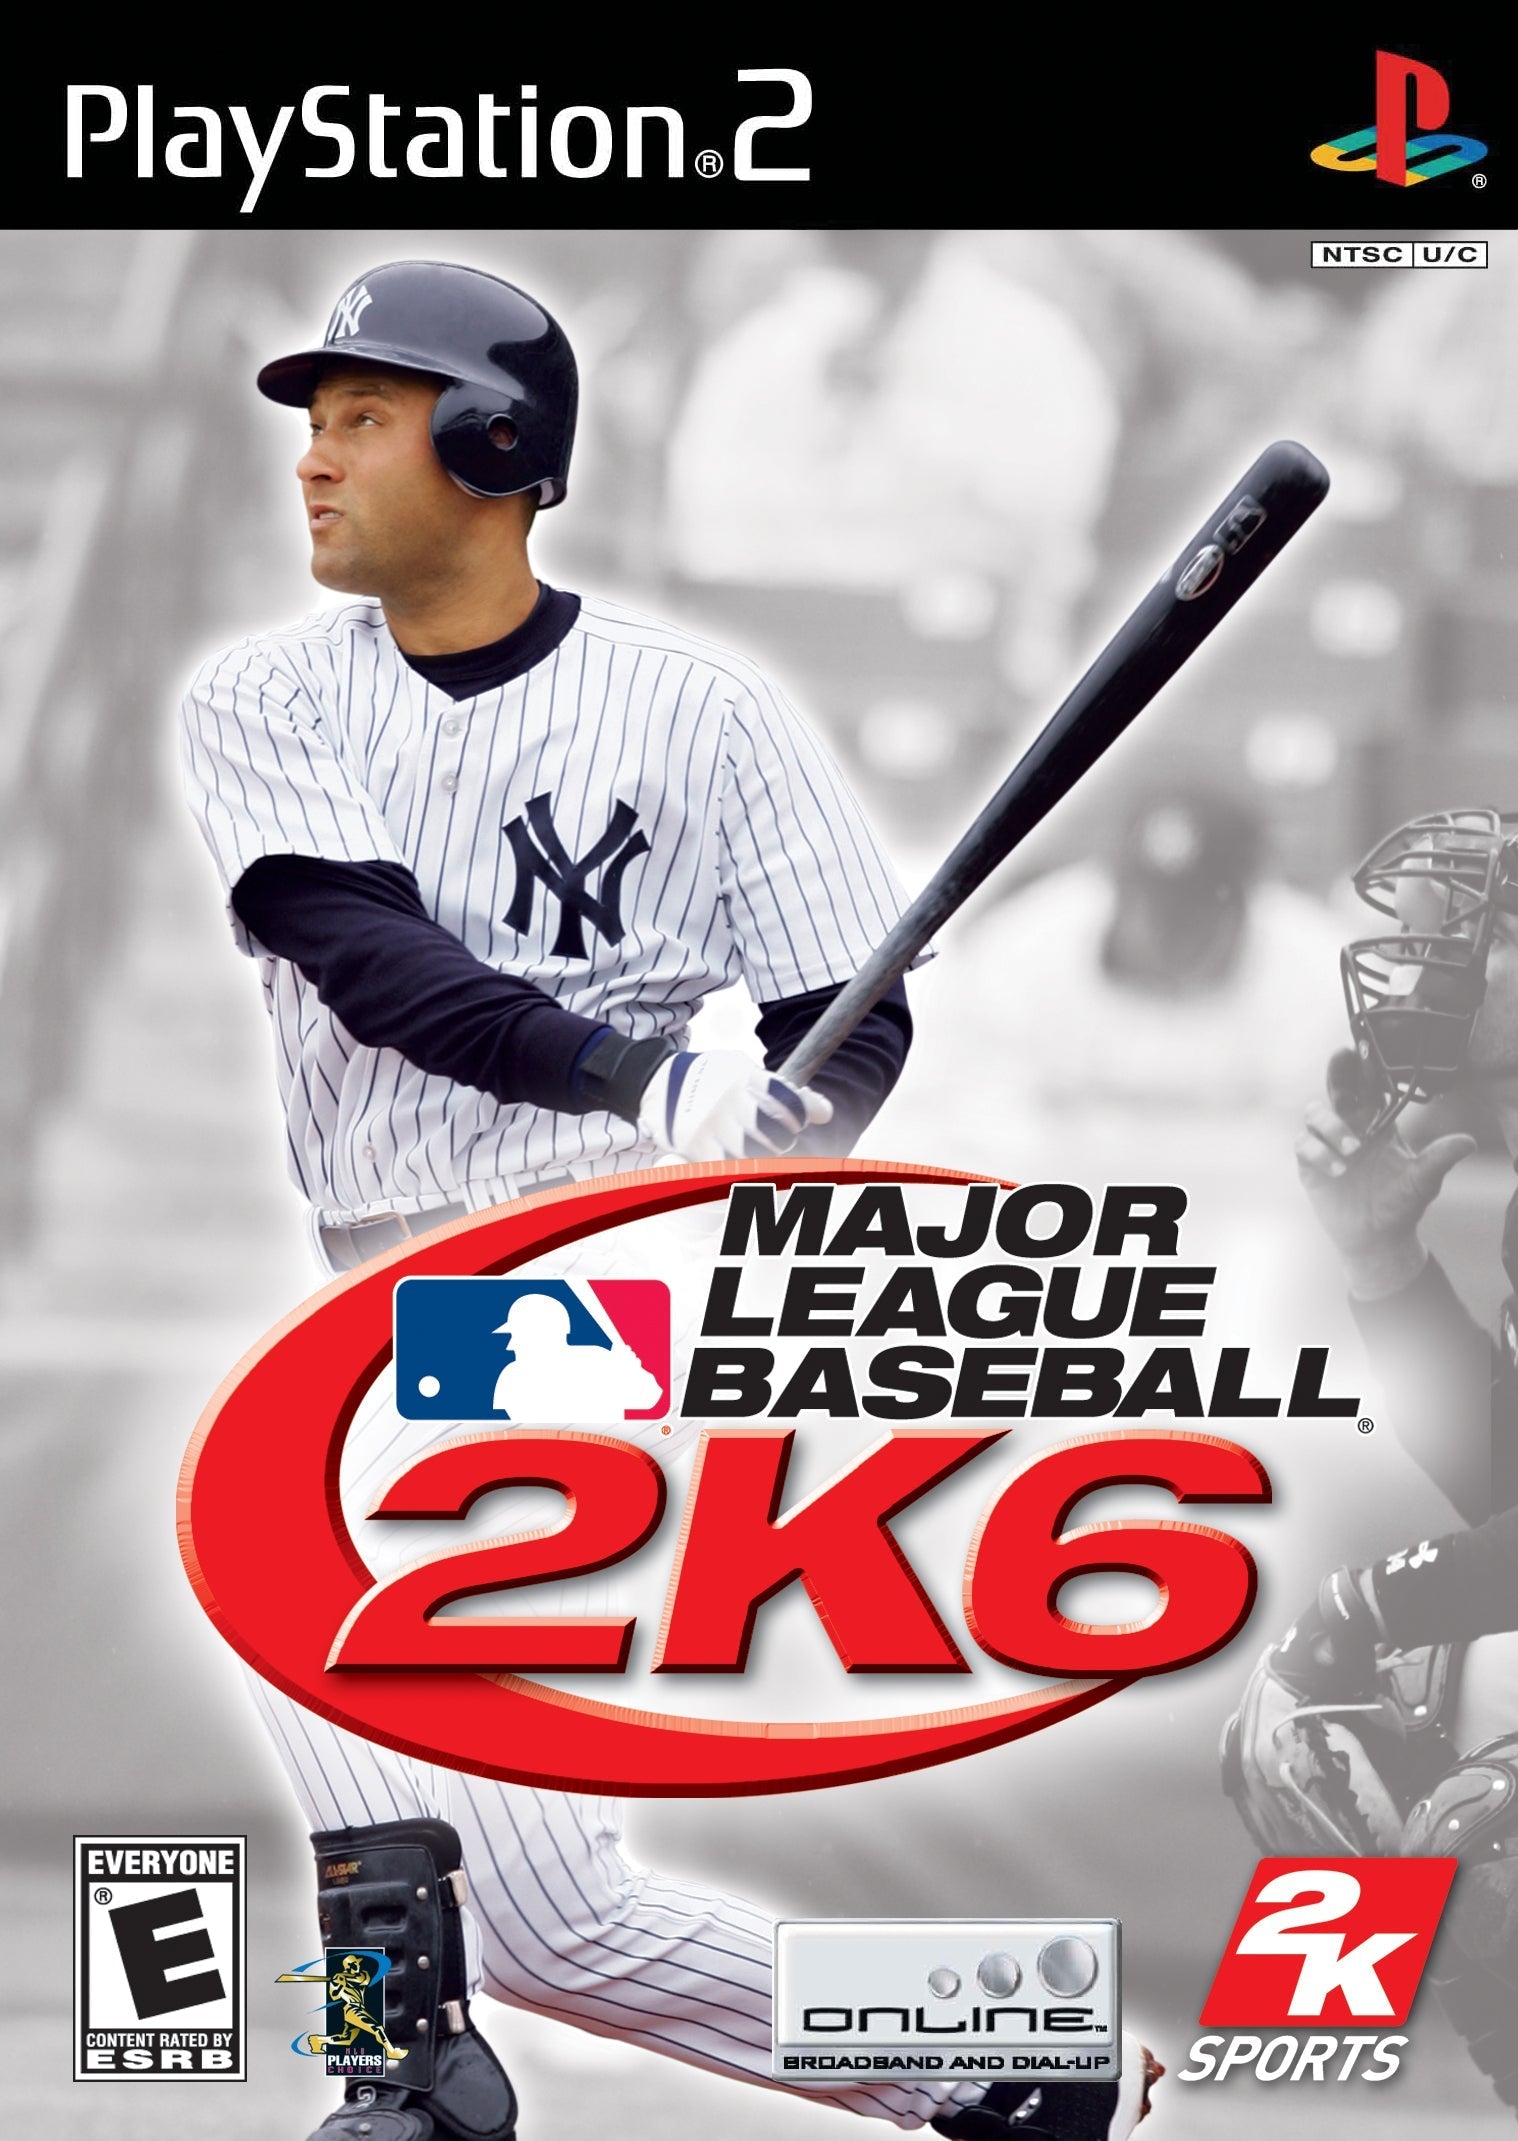 Major League Baseball 2K6 - PlayStation 2 (PS2) Game